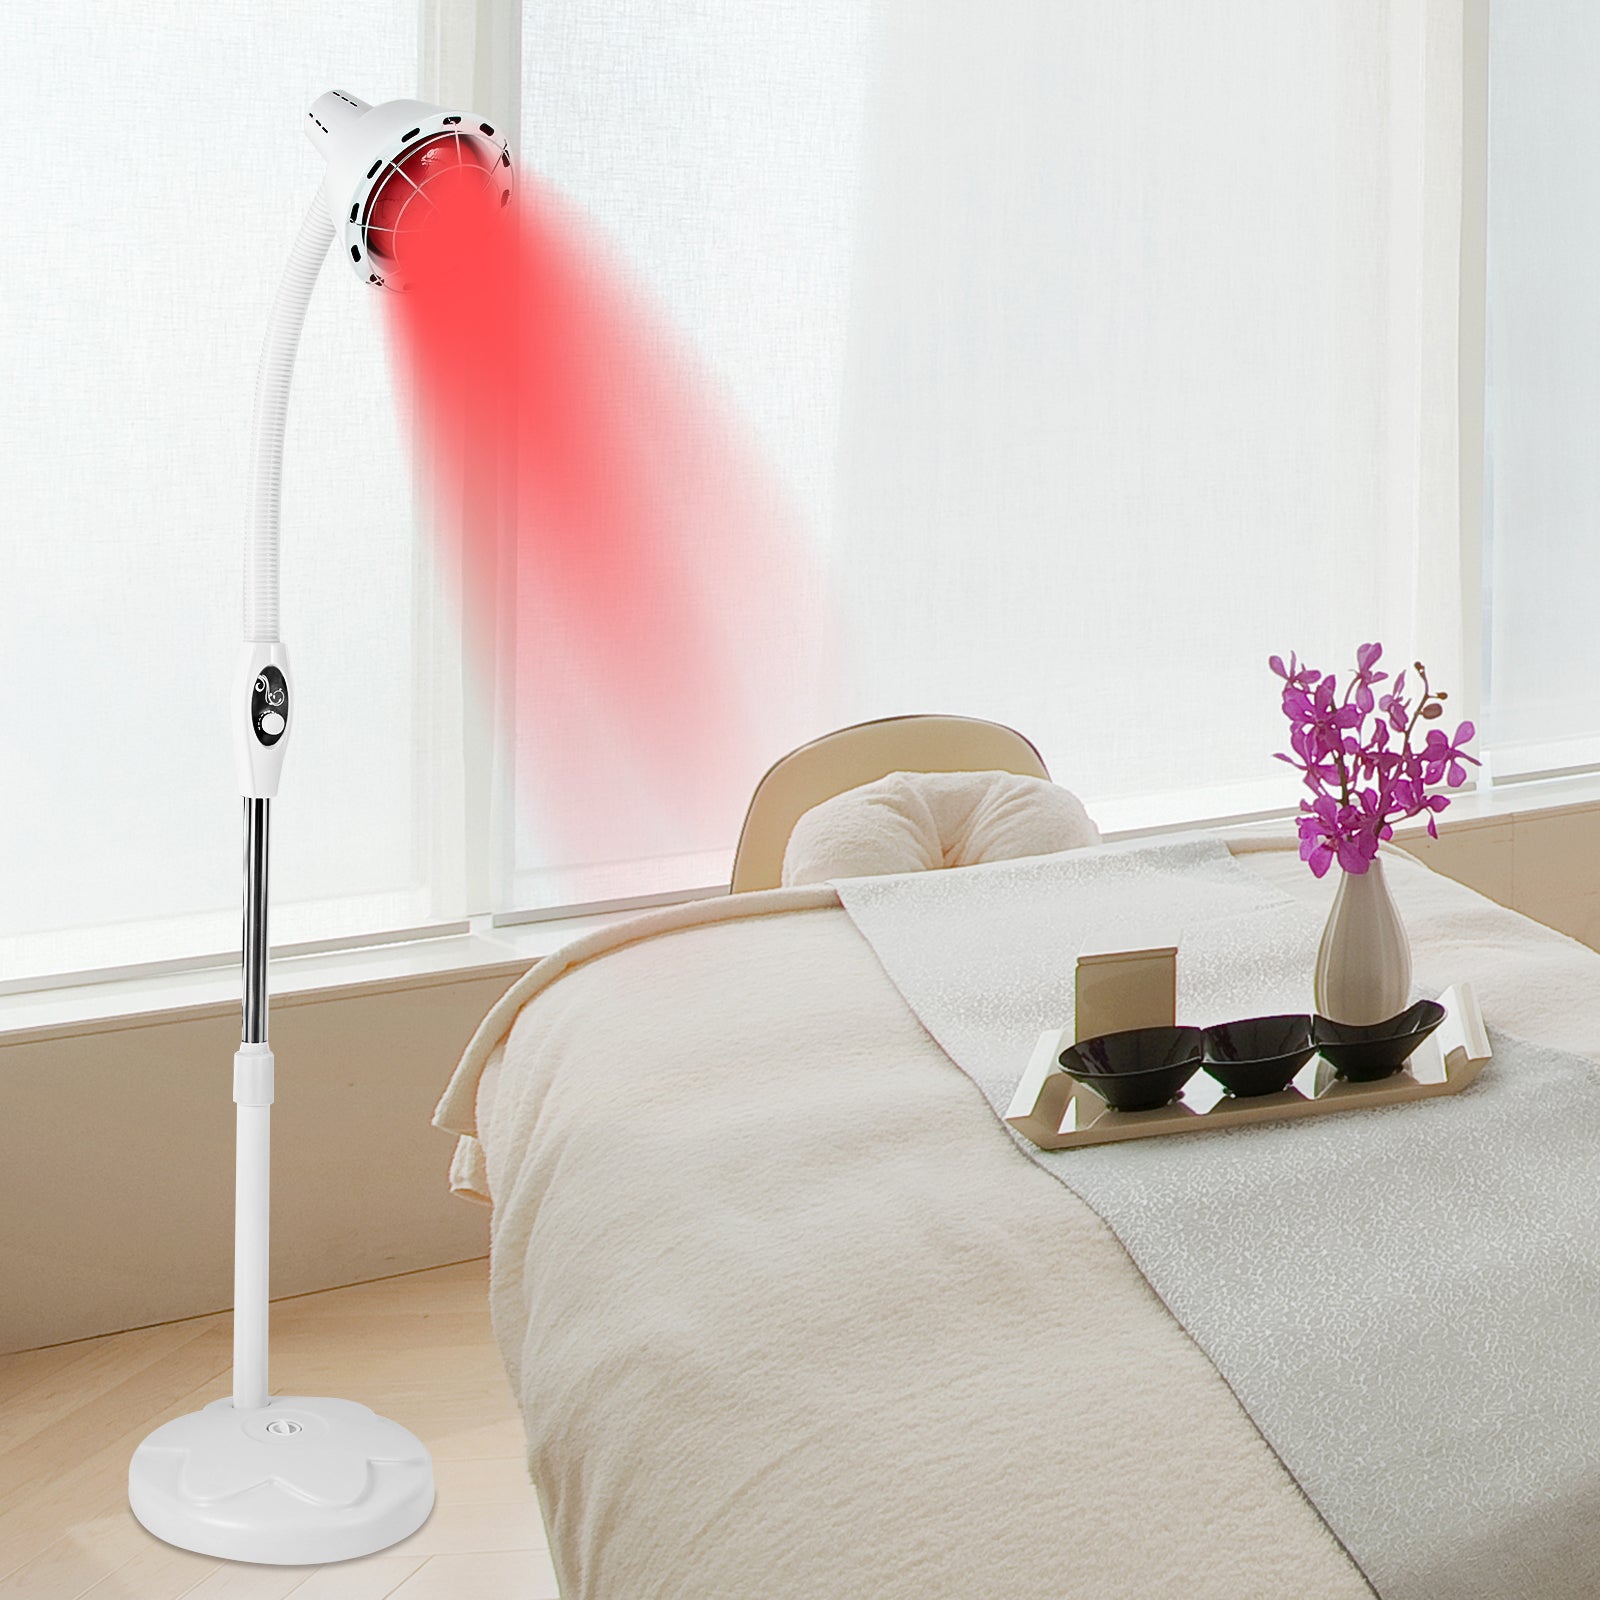 Lampe chauffante infrarouge puissante pour soulager les douleurs